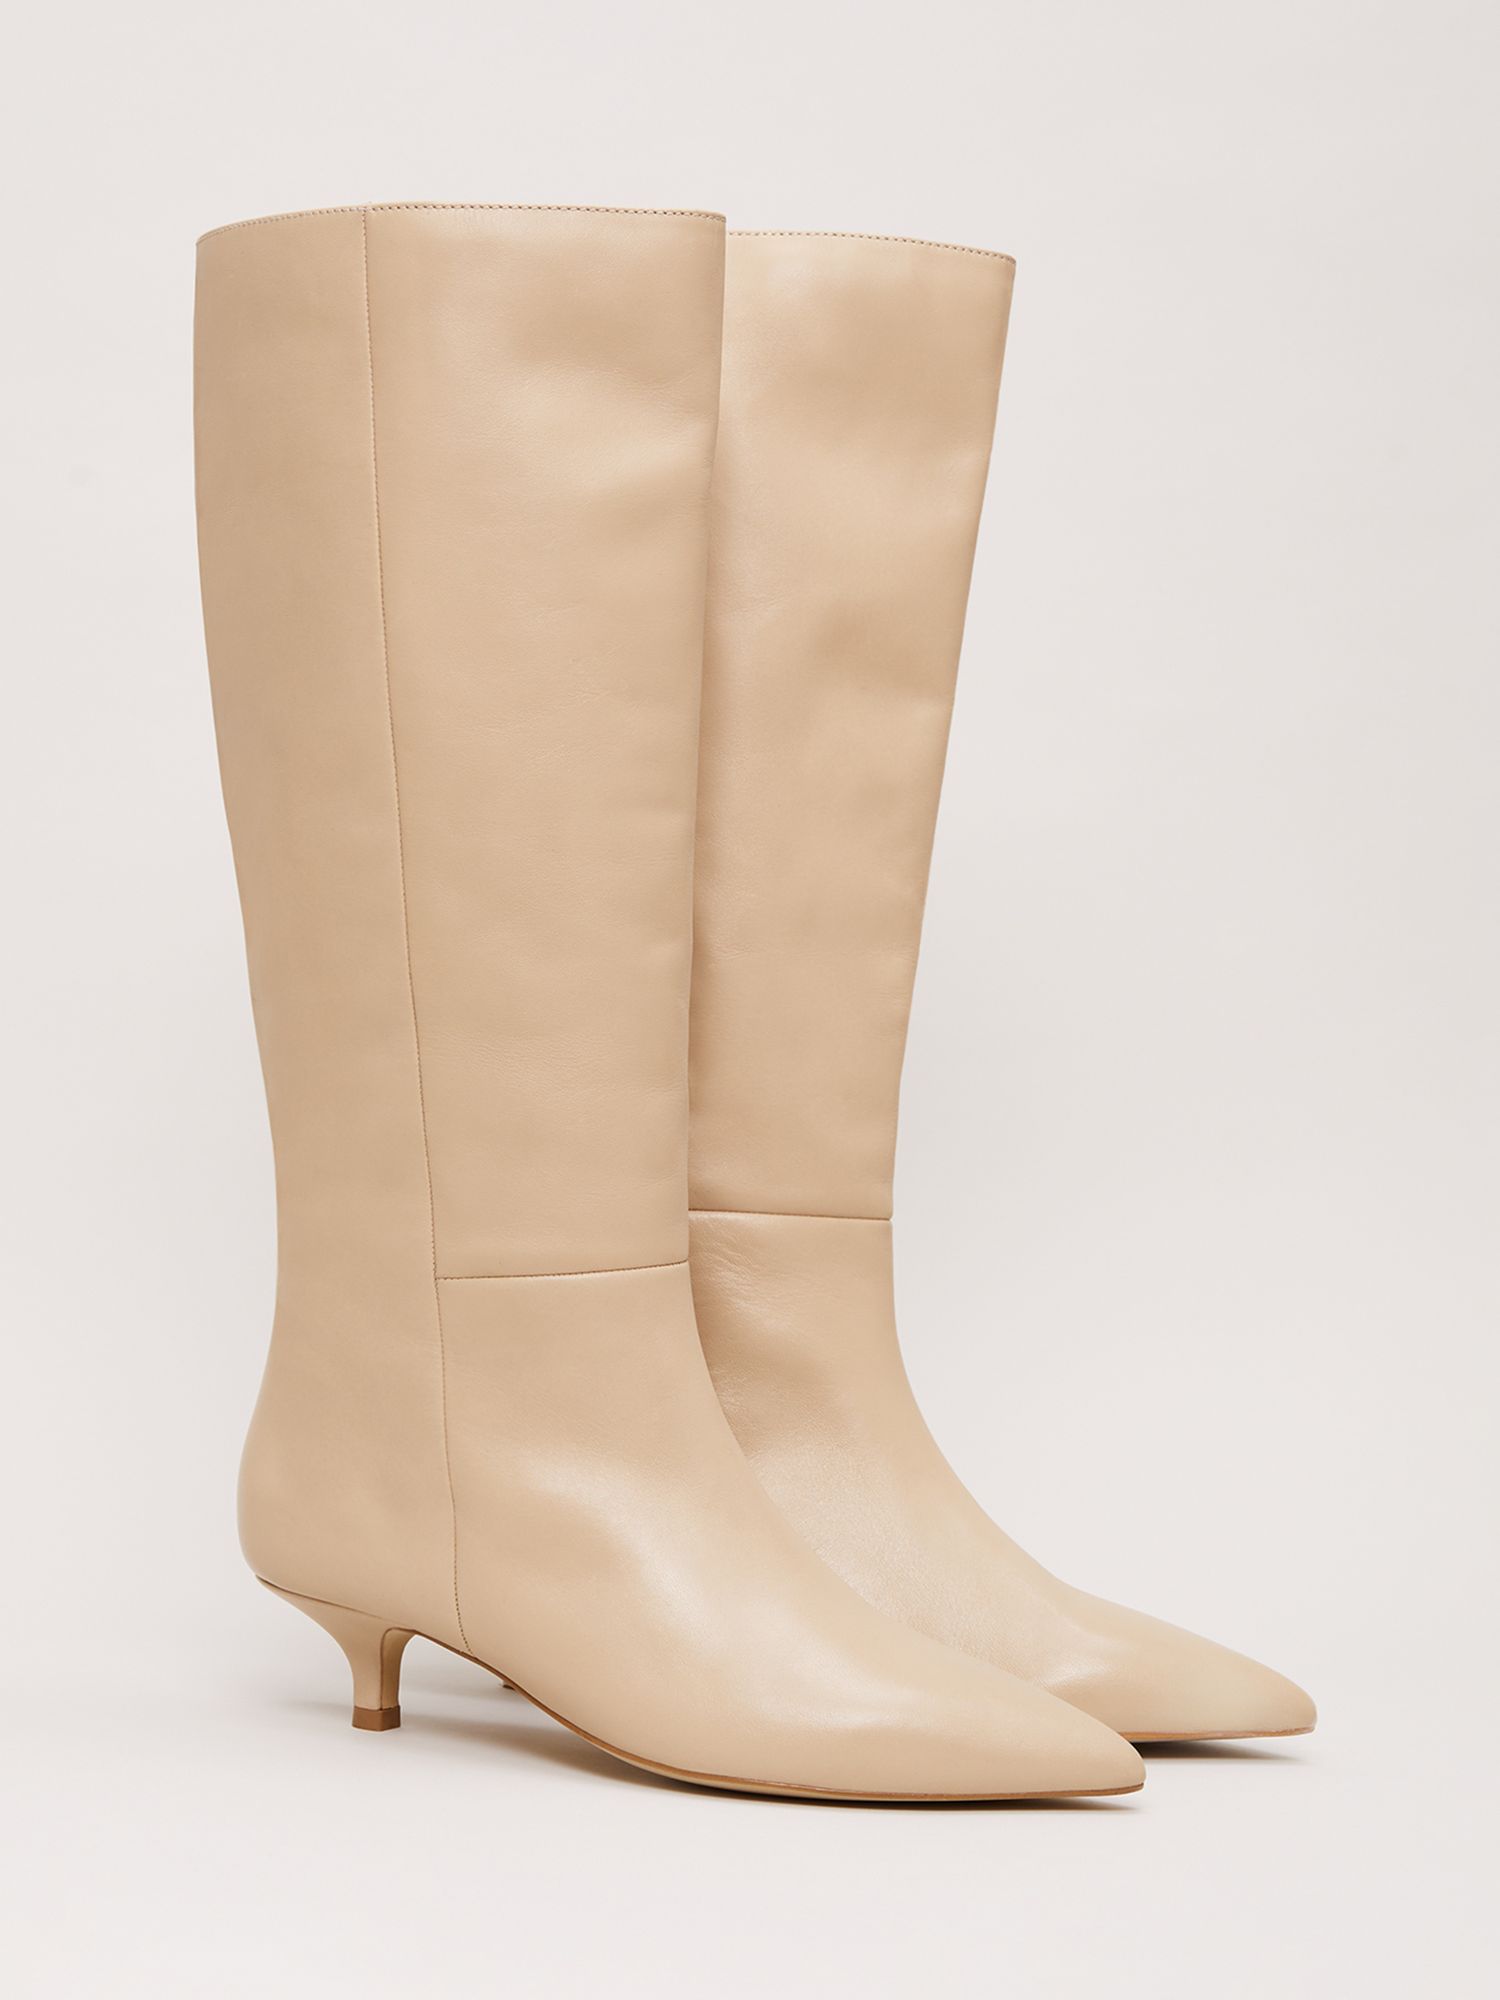 Phase Eight Leather Kitten Heel Boot, Cream, EU36